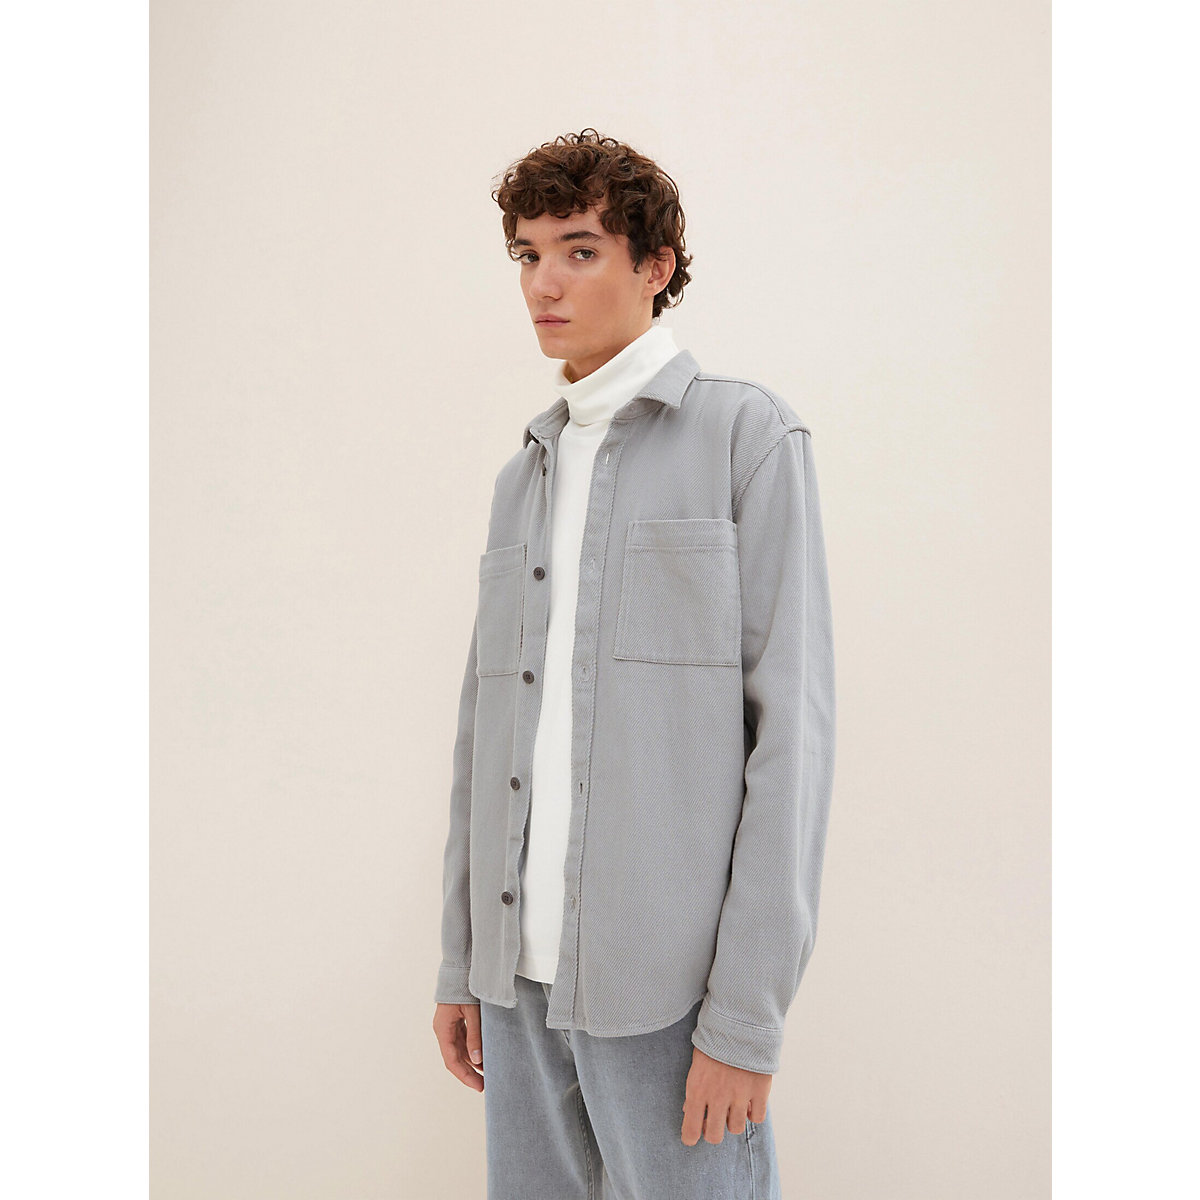 TOM TAILOR Denim Blusen & Shirts Relaxed Fit Hemd mit aufgesetzten Taschen Langarmhemden grau